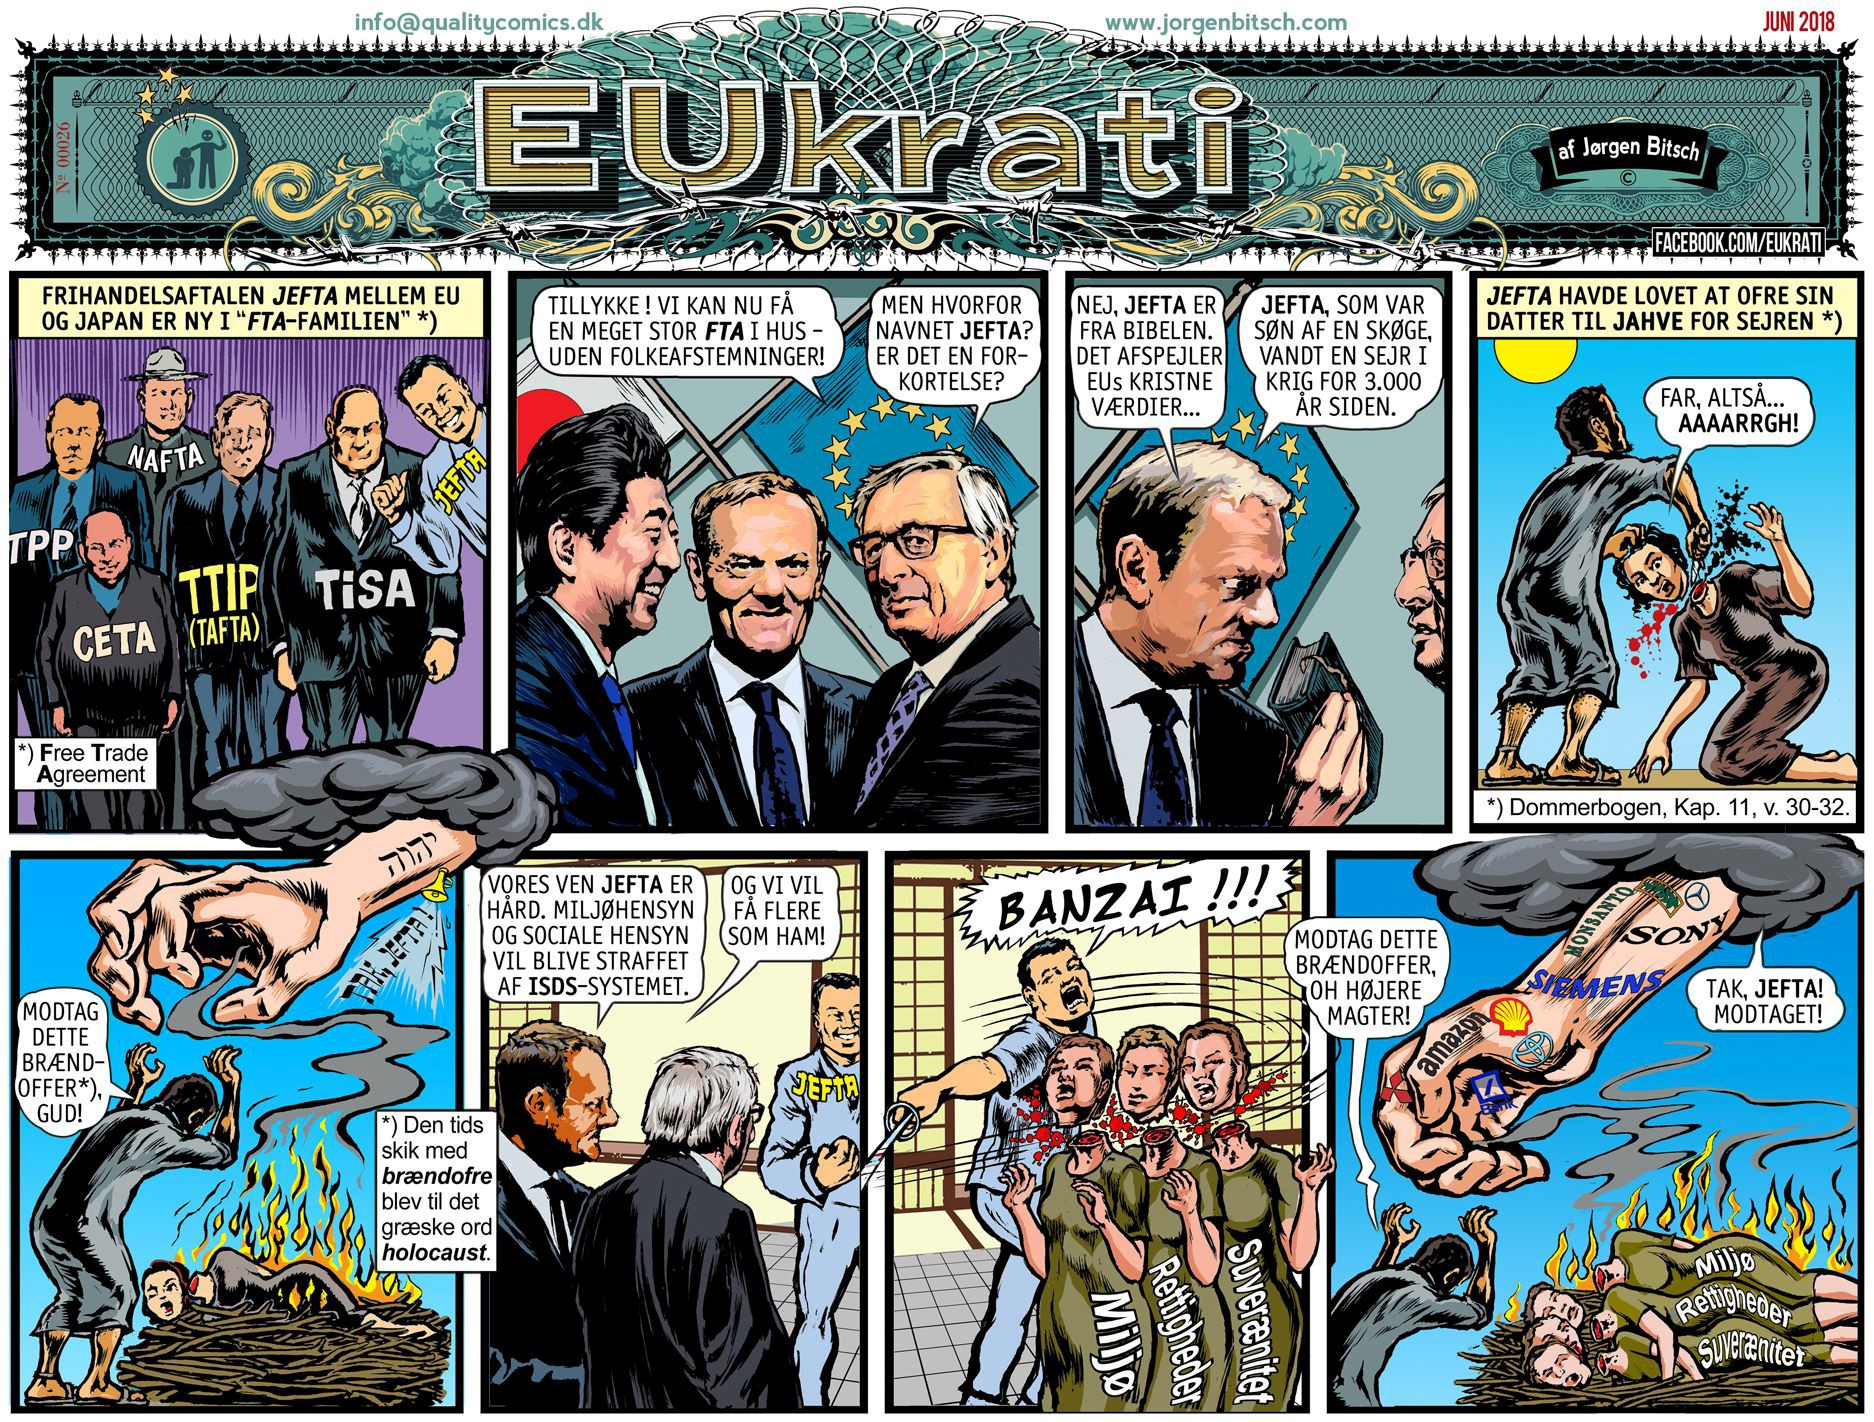 Utdrag fra tegneserien EU-krati av Jørgen Bitsch.